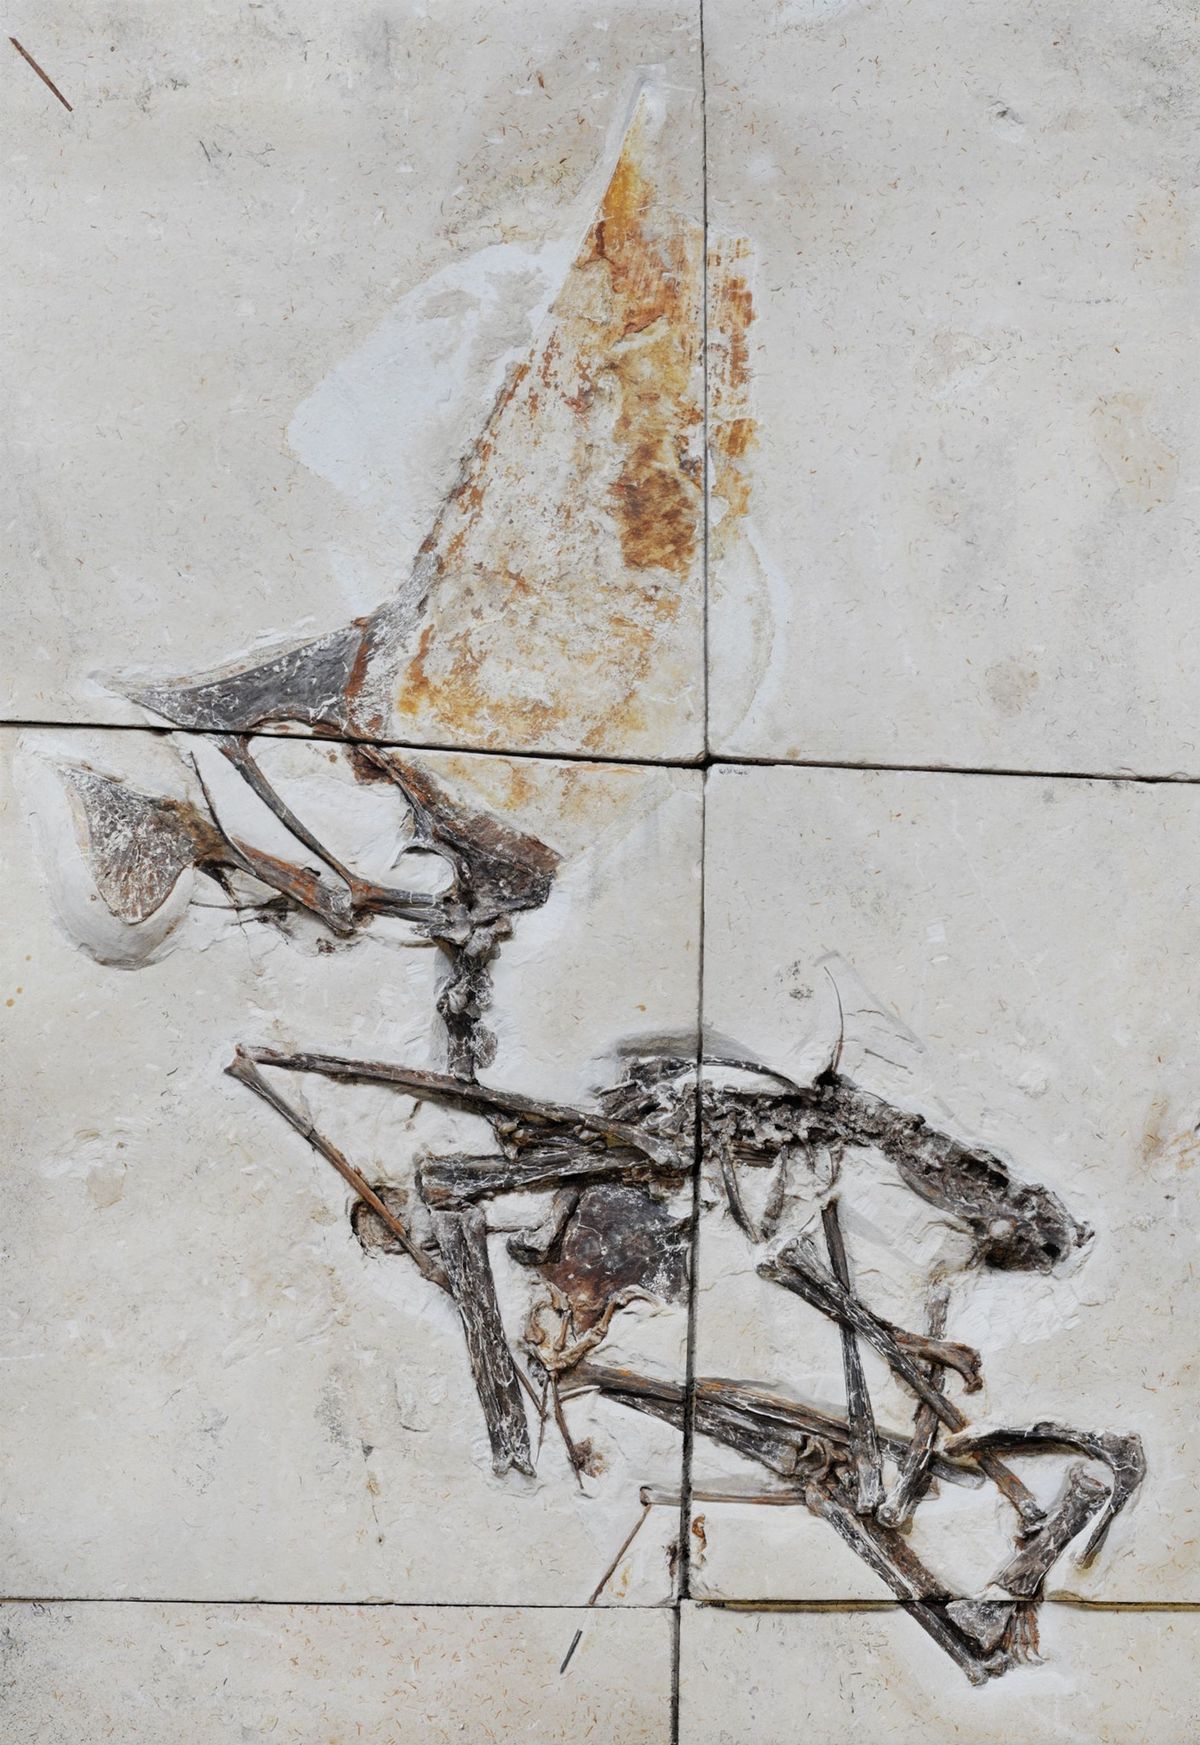 Ingebed in meerdere platen kalksteen is het onlangs beschreven fossiel het eerste vrijwel volledige skelet van een pterosaurirsoort Het werd voor het eerst in 2003 gedentificeerd